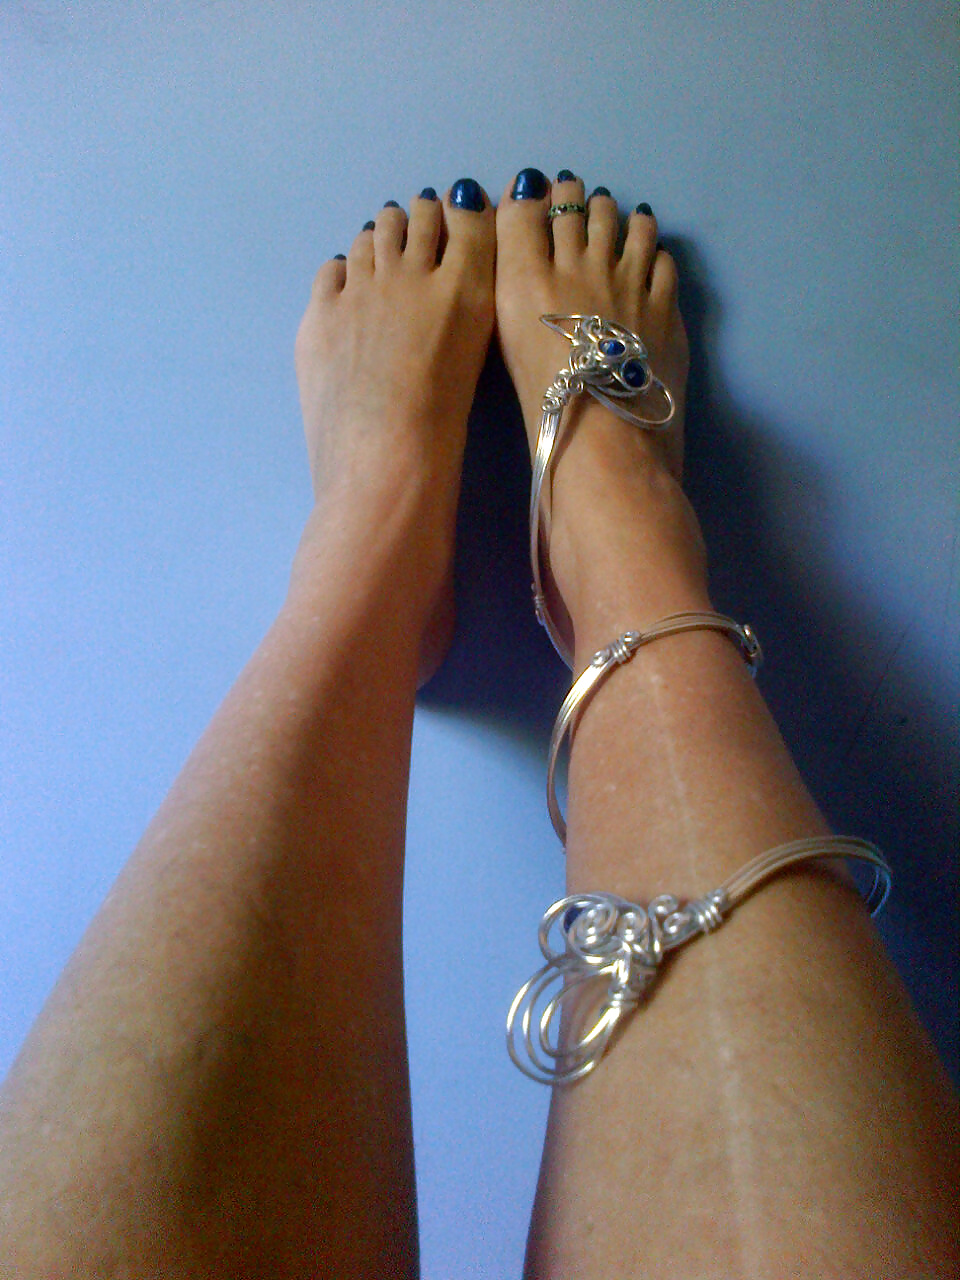 Aquí presento a nuevos pies! cortesía de mi amigo cristina! 
 #30117065